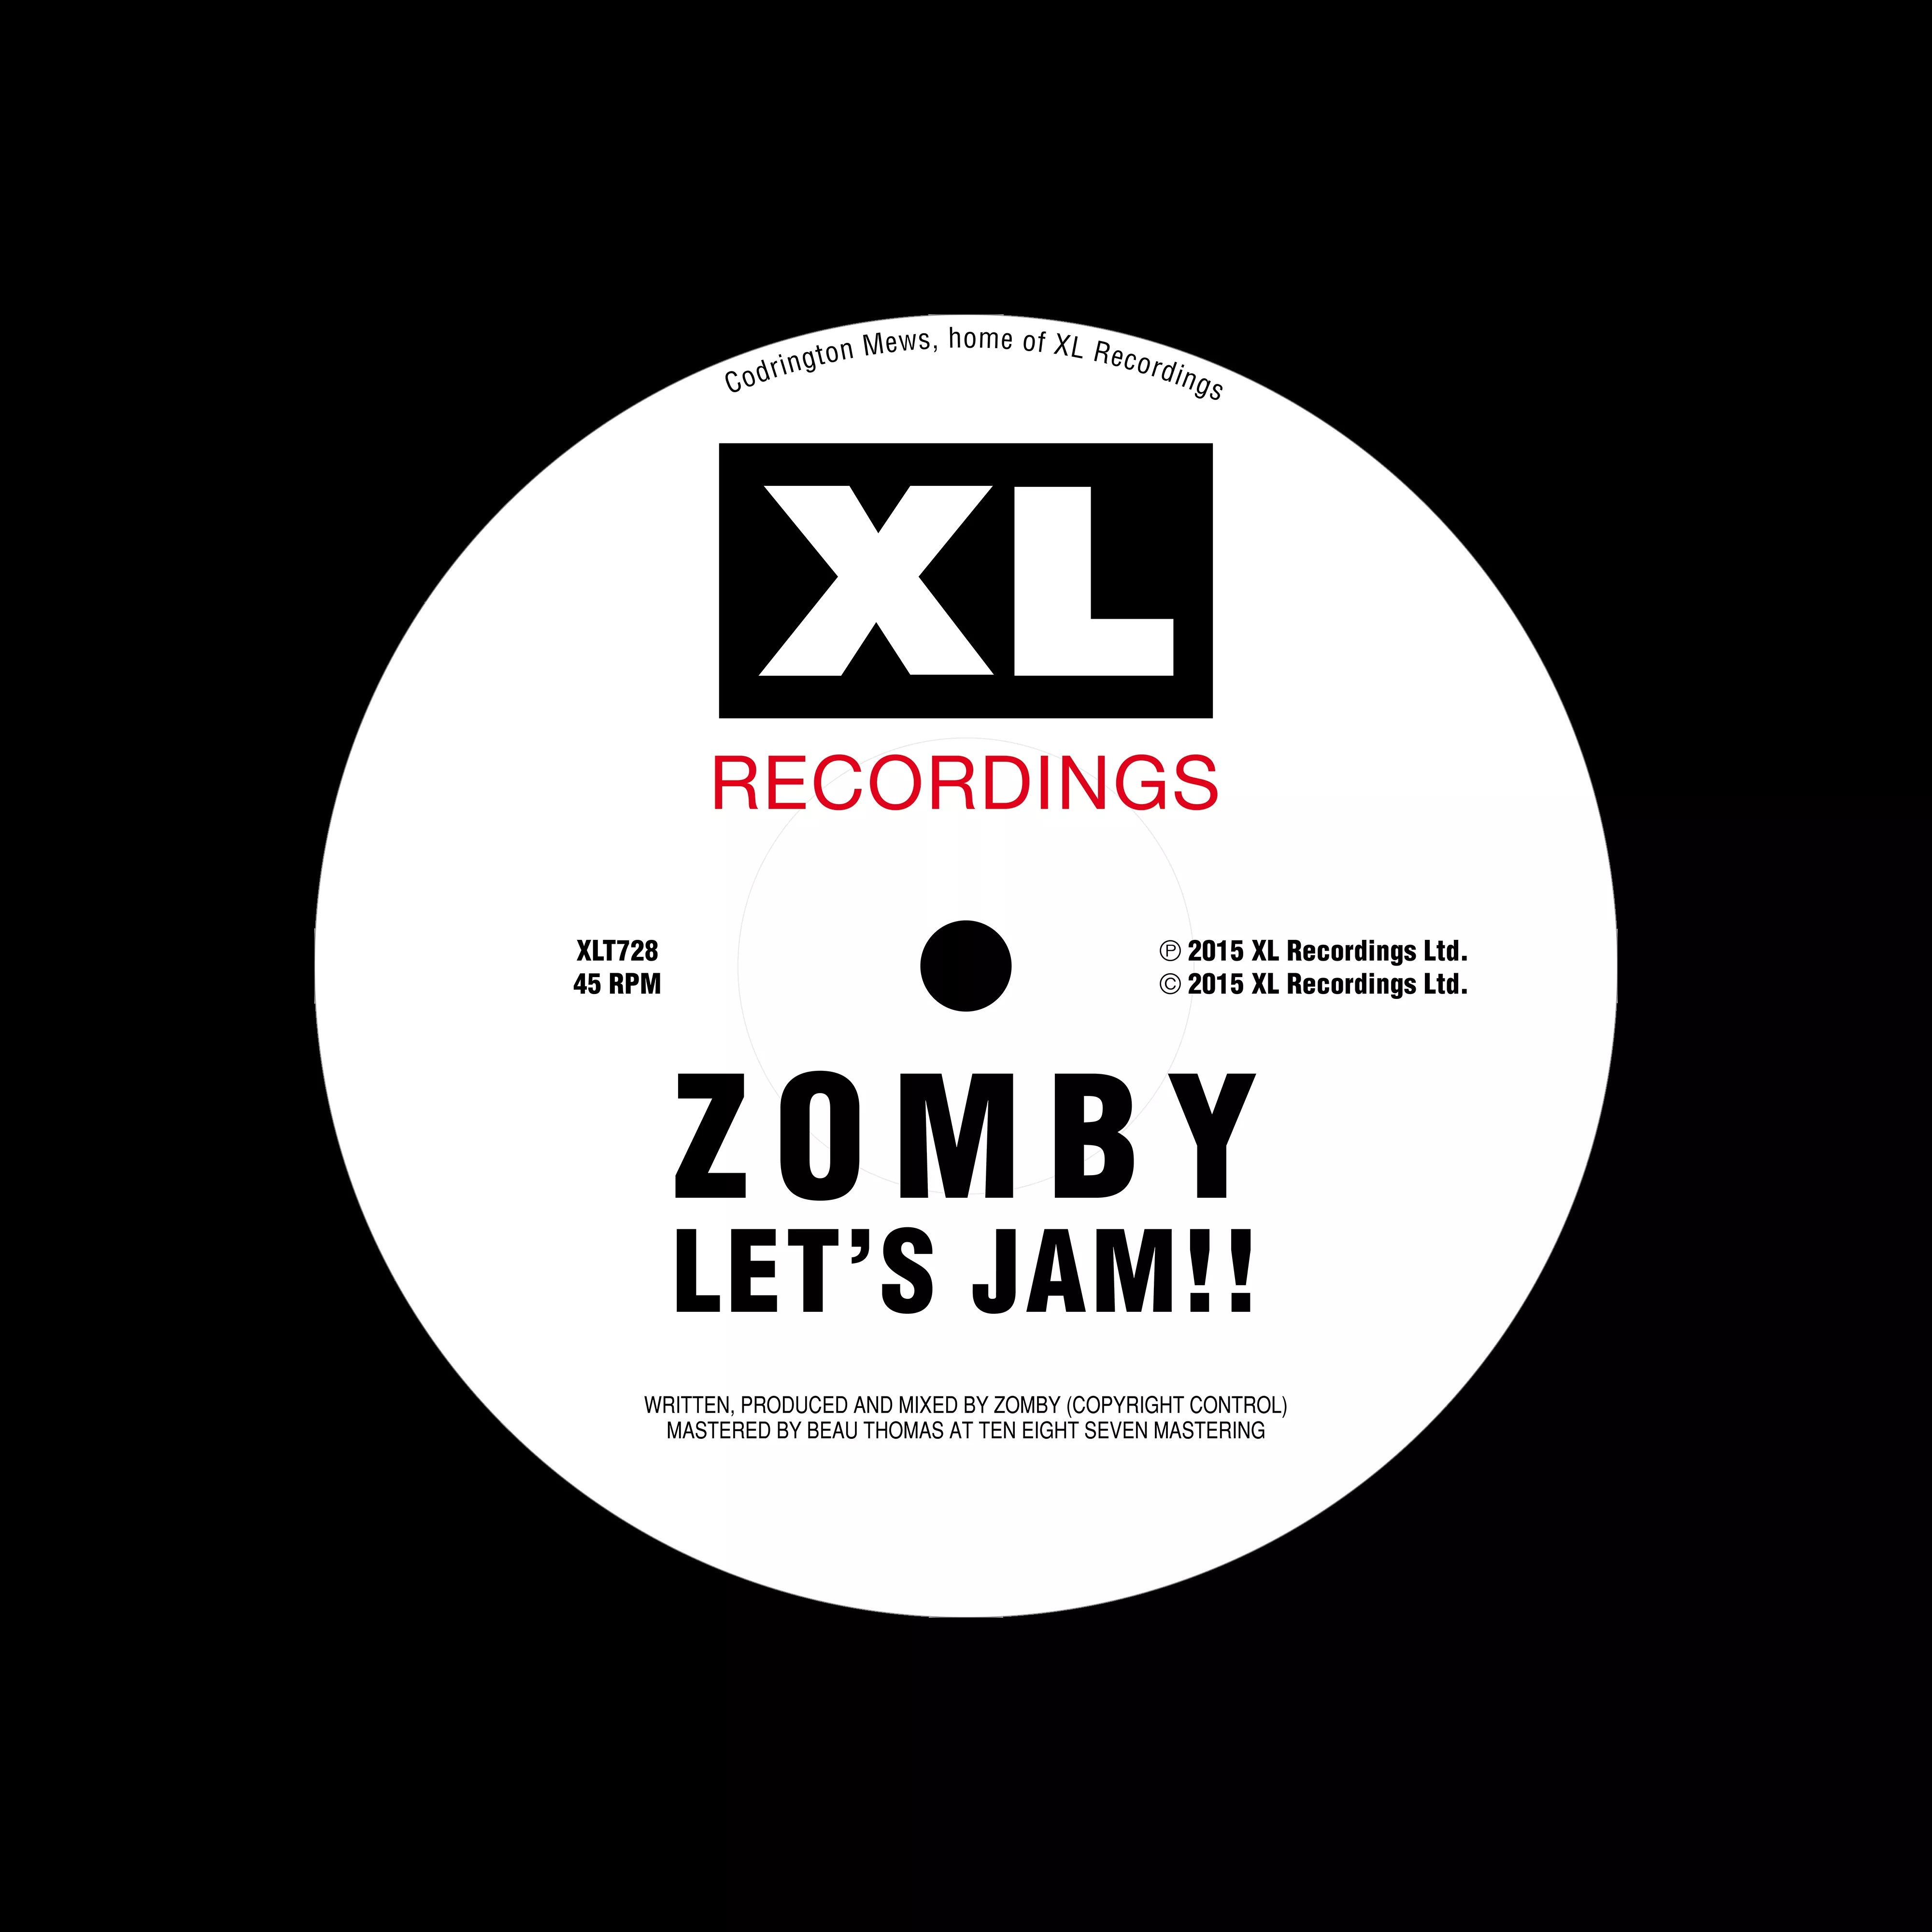 Let's Jam !! (Let's Jam 1 & Let's Jam 2) - Zomby